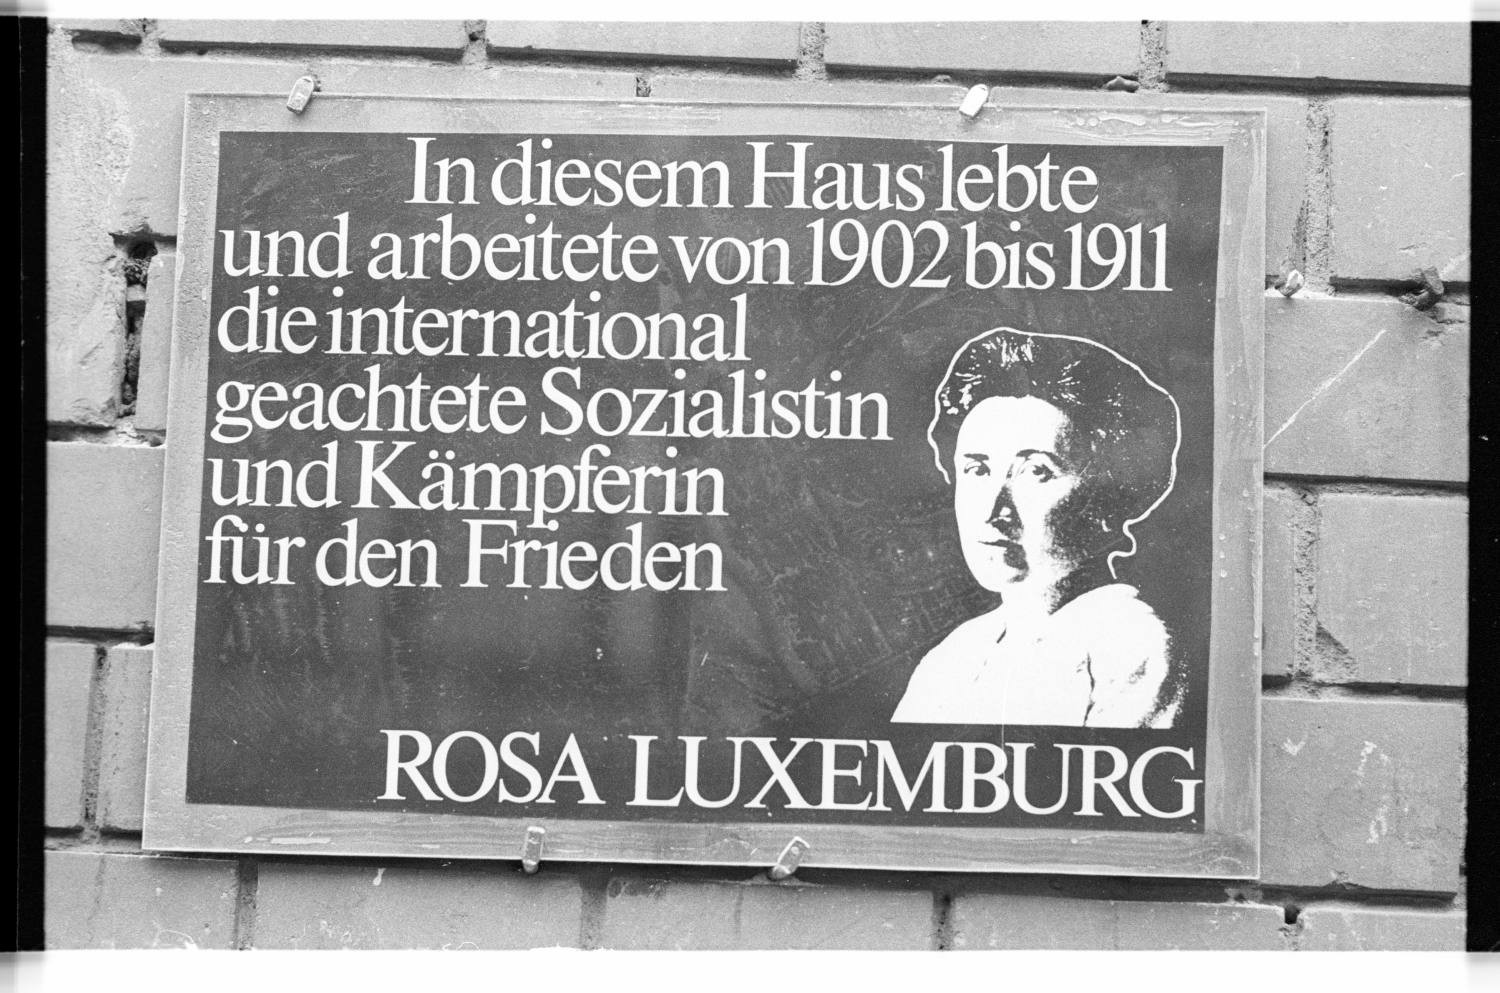 Kleinbildnegative: Gedenktafel, Rosa Luxemburg, 1982 (Museen Tempelhof-Schöneberg/Jürgen Henschel RR-F)